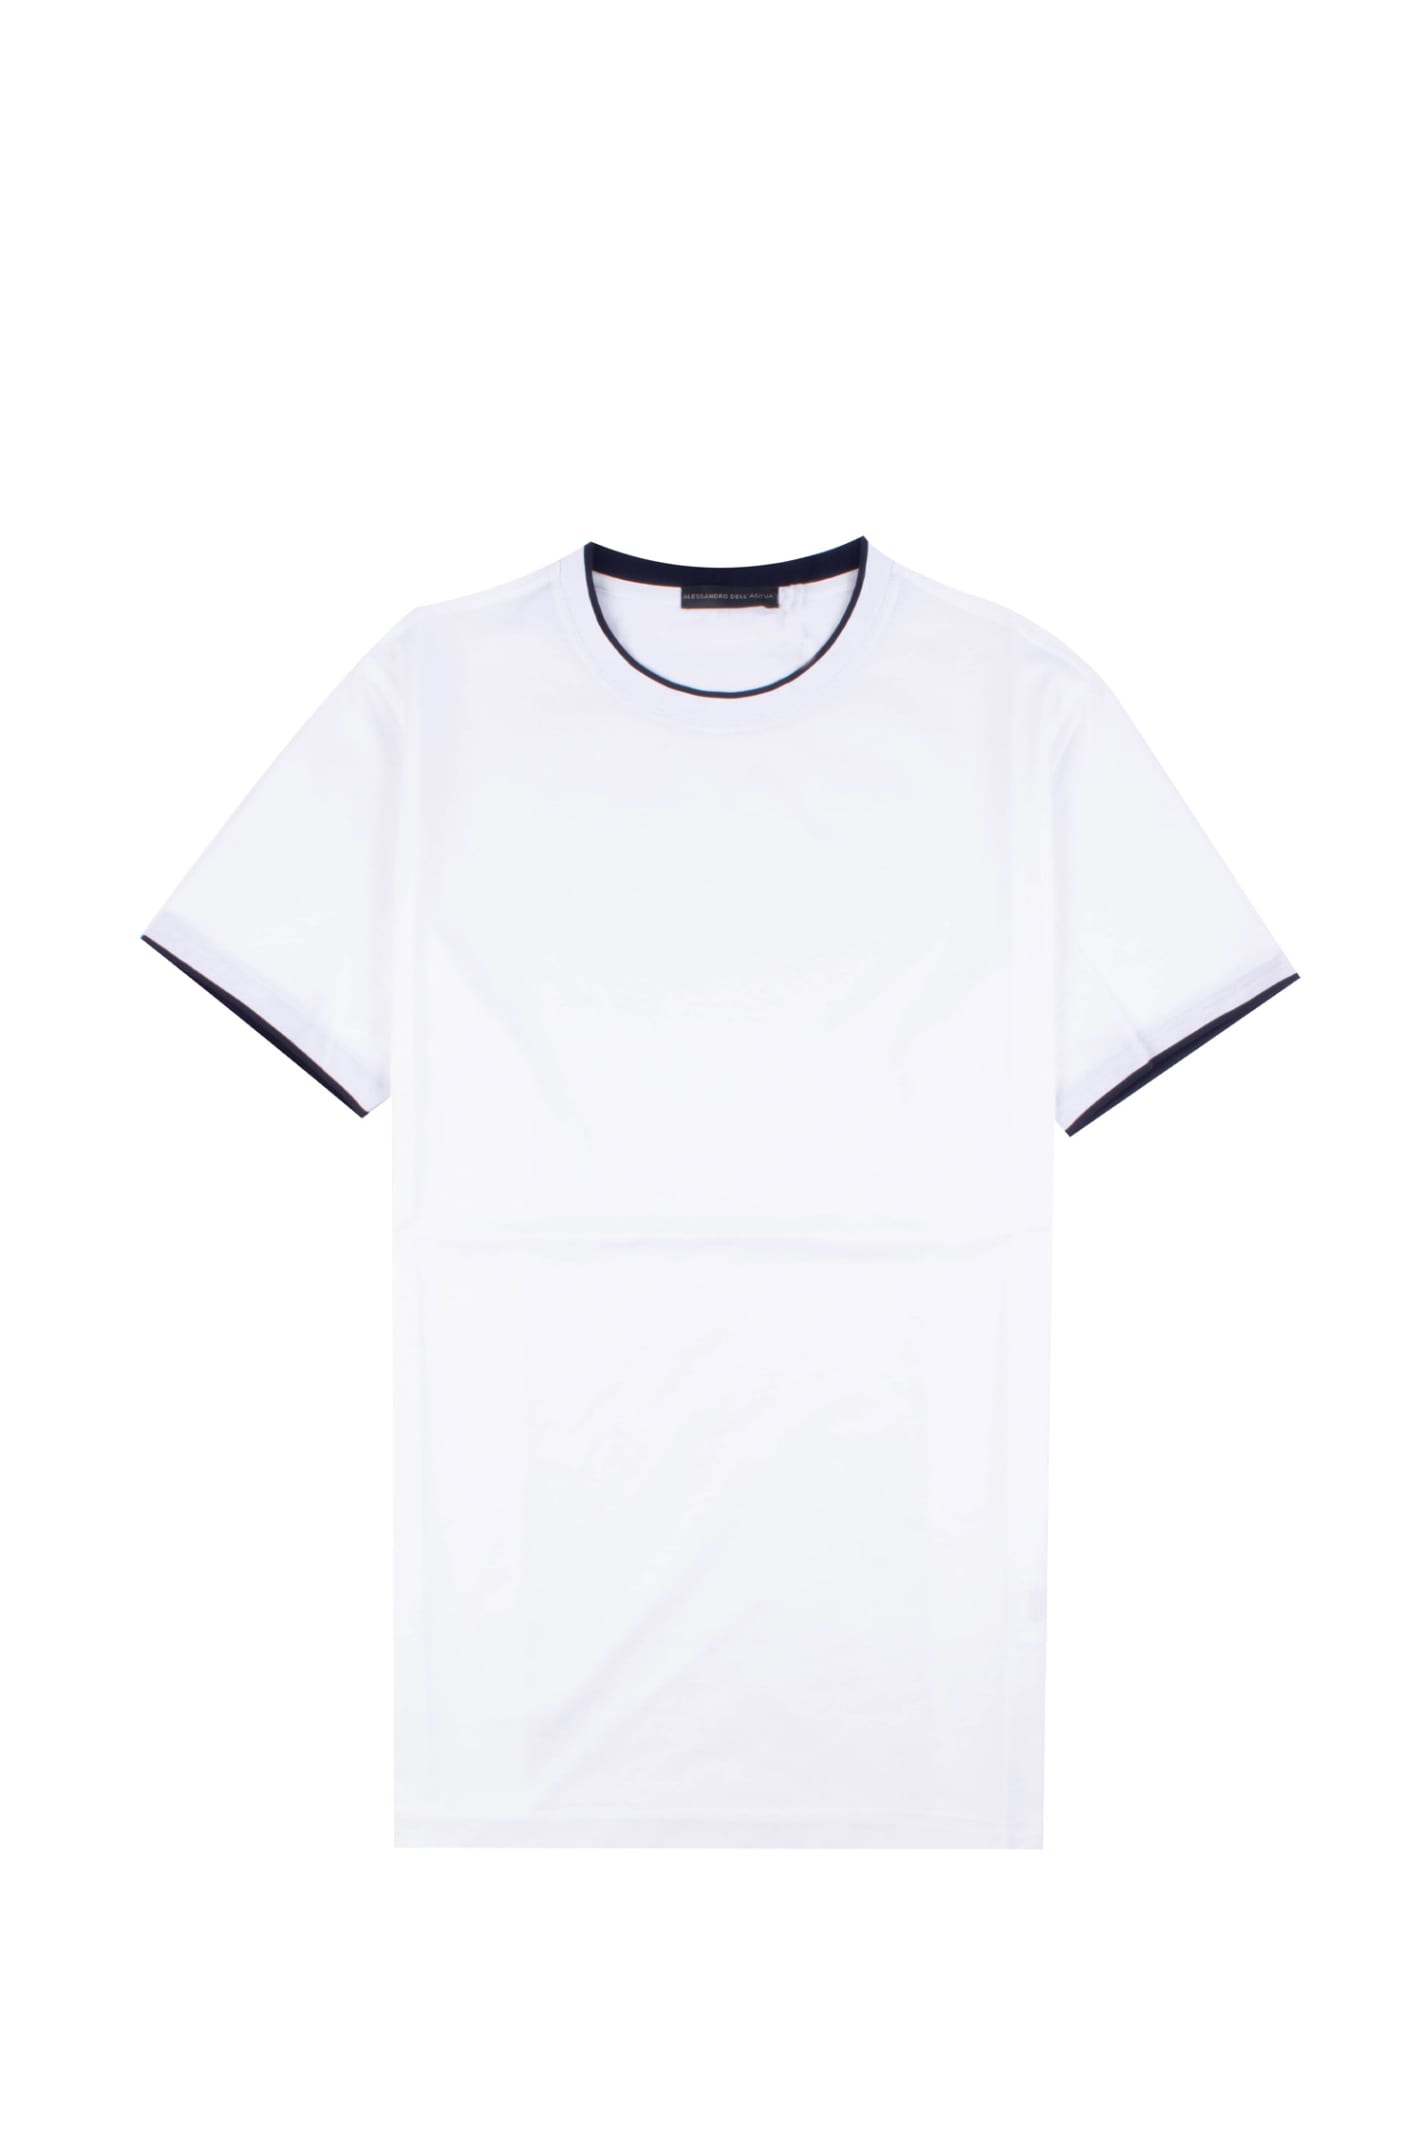 Alessandro Dell'Acqua Cotton T-shirt